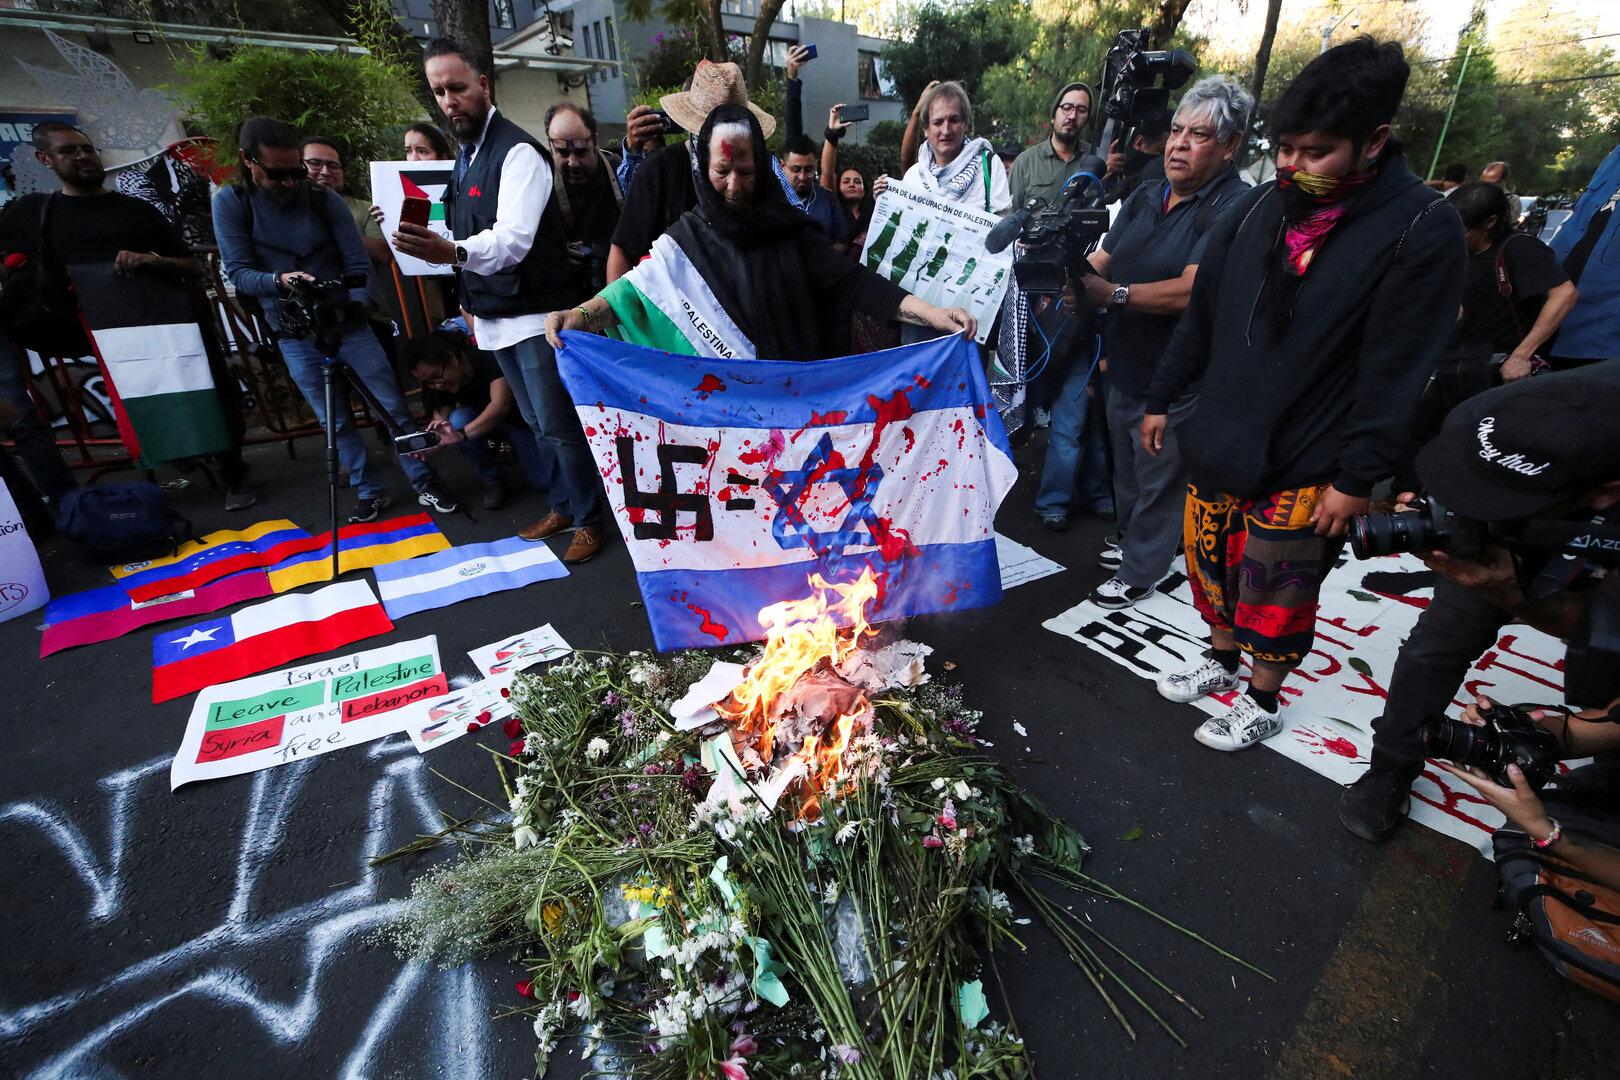 seit hamas-überfall: schlimmste antisemitismus-welle weltweit seit 1945